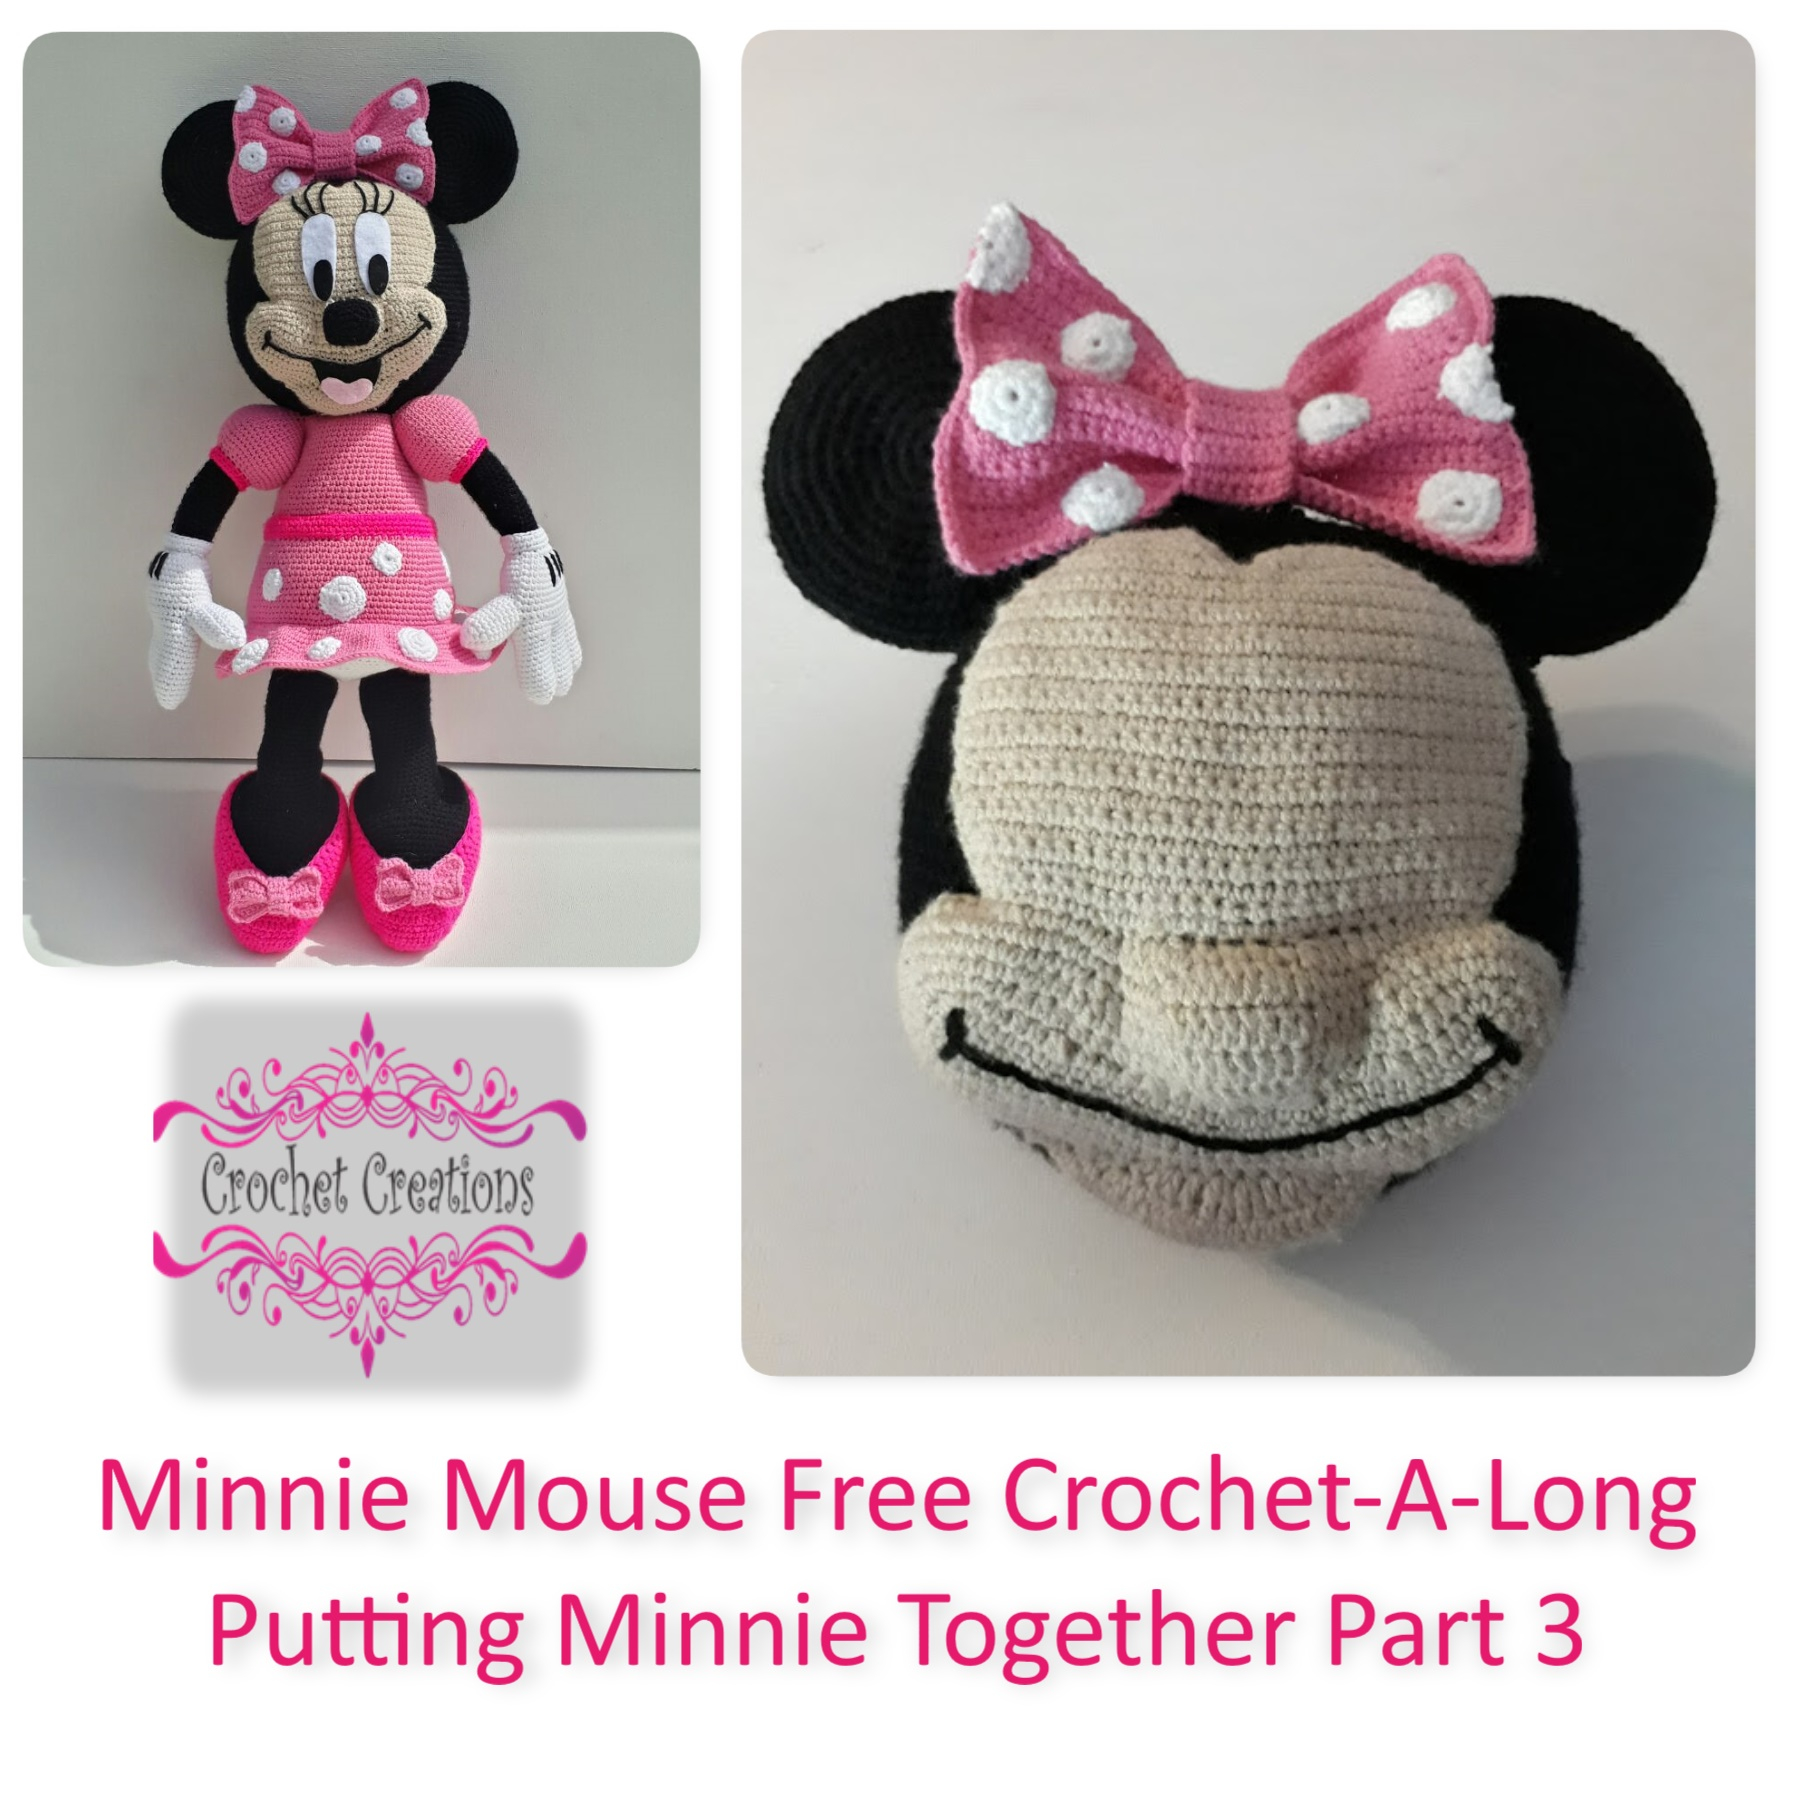 Free Crochet Minnie Mouse Doll Pattern Minnie Mouse Free Crochet A Long Putting Minnie Together Part 3